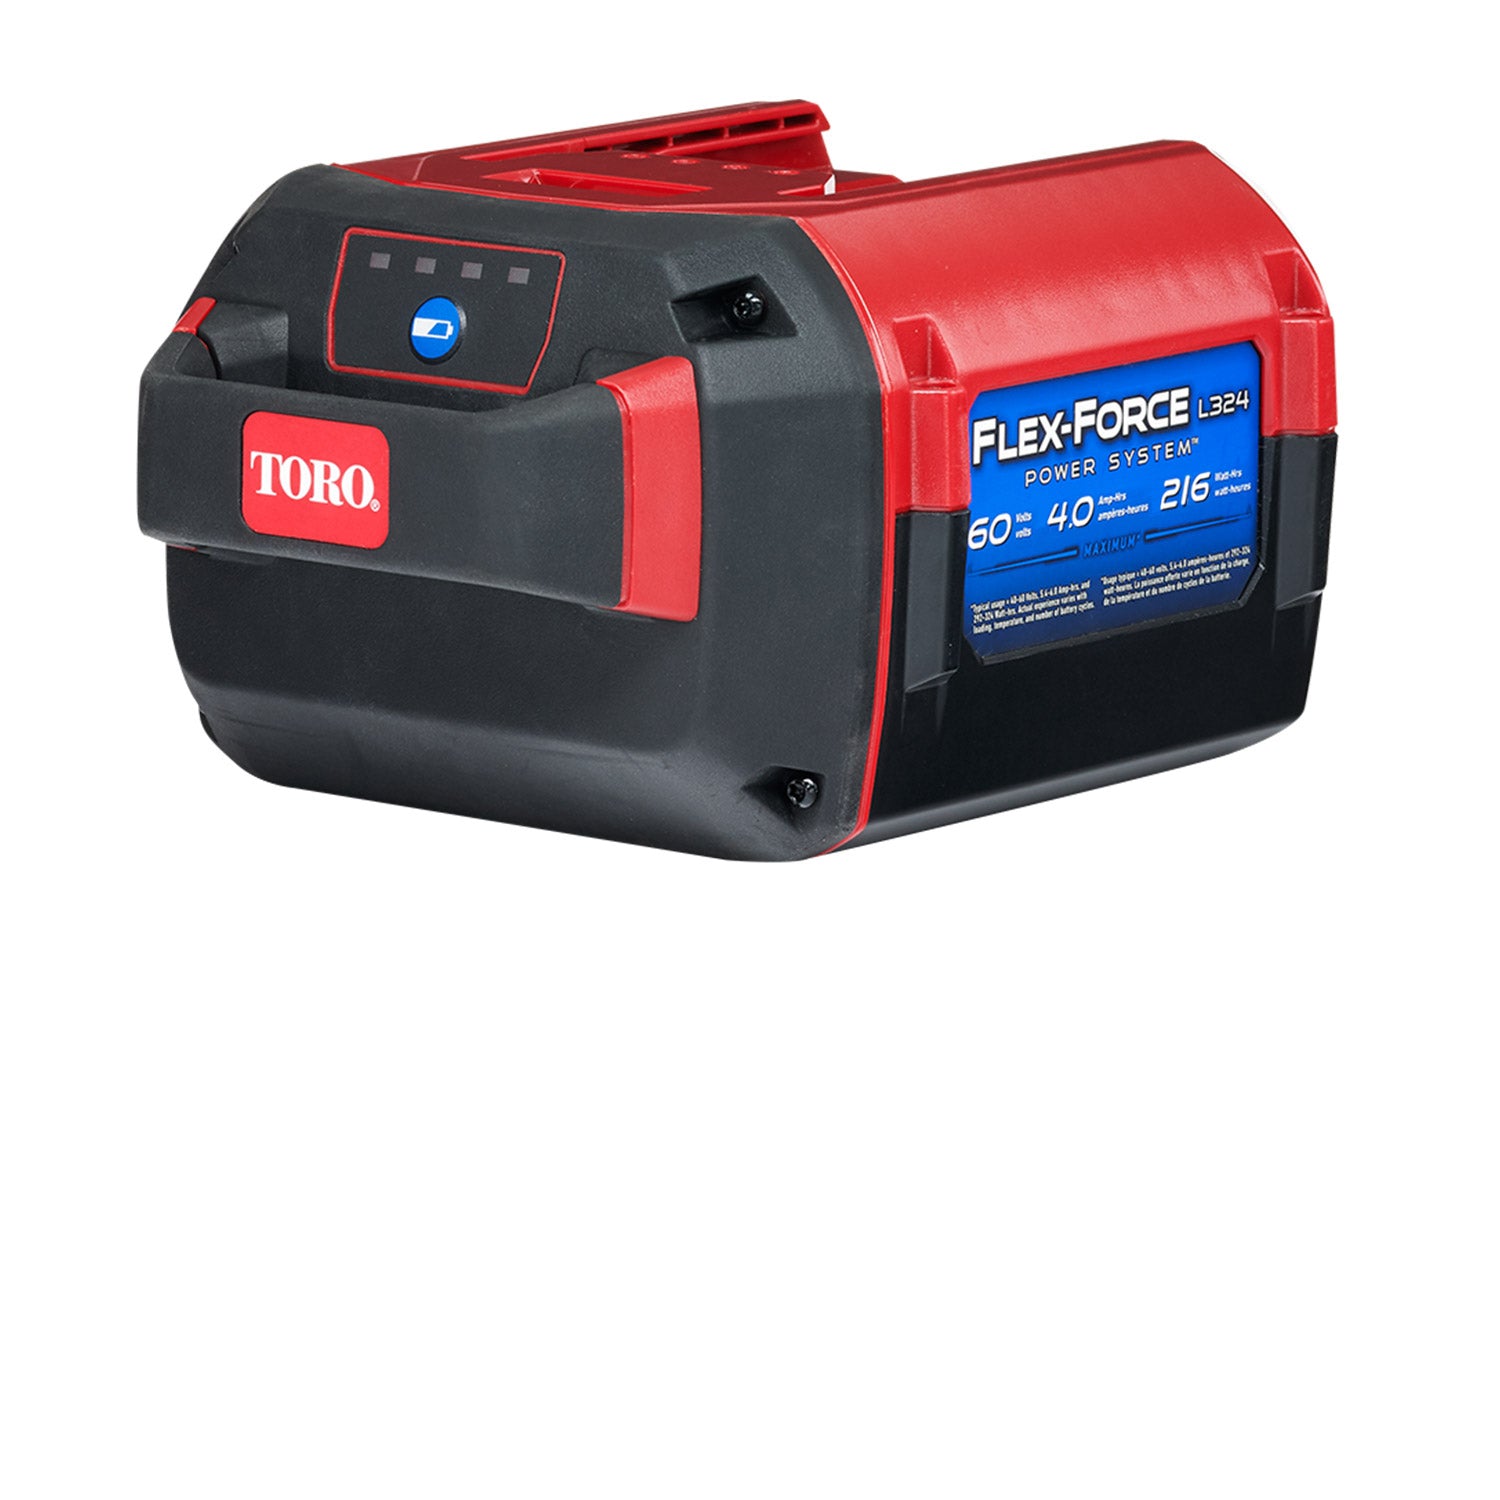 Toro 60V* 4.0 Ah 216Wh Battery